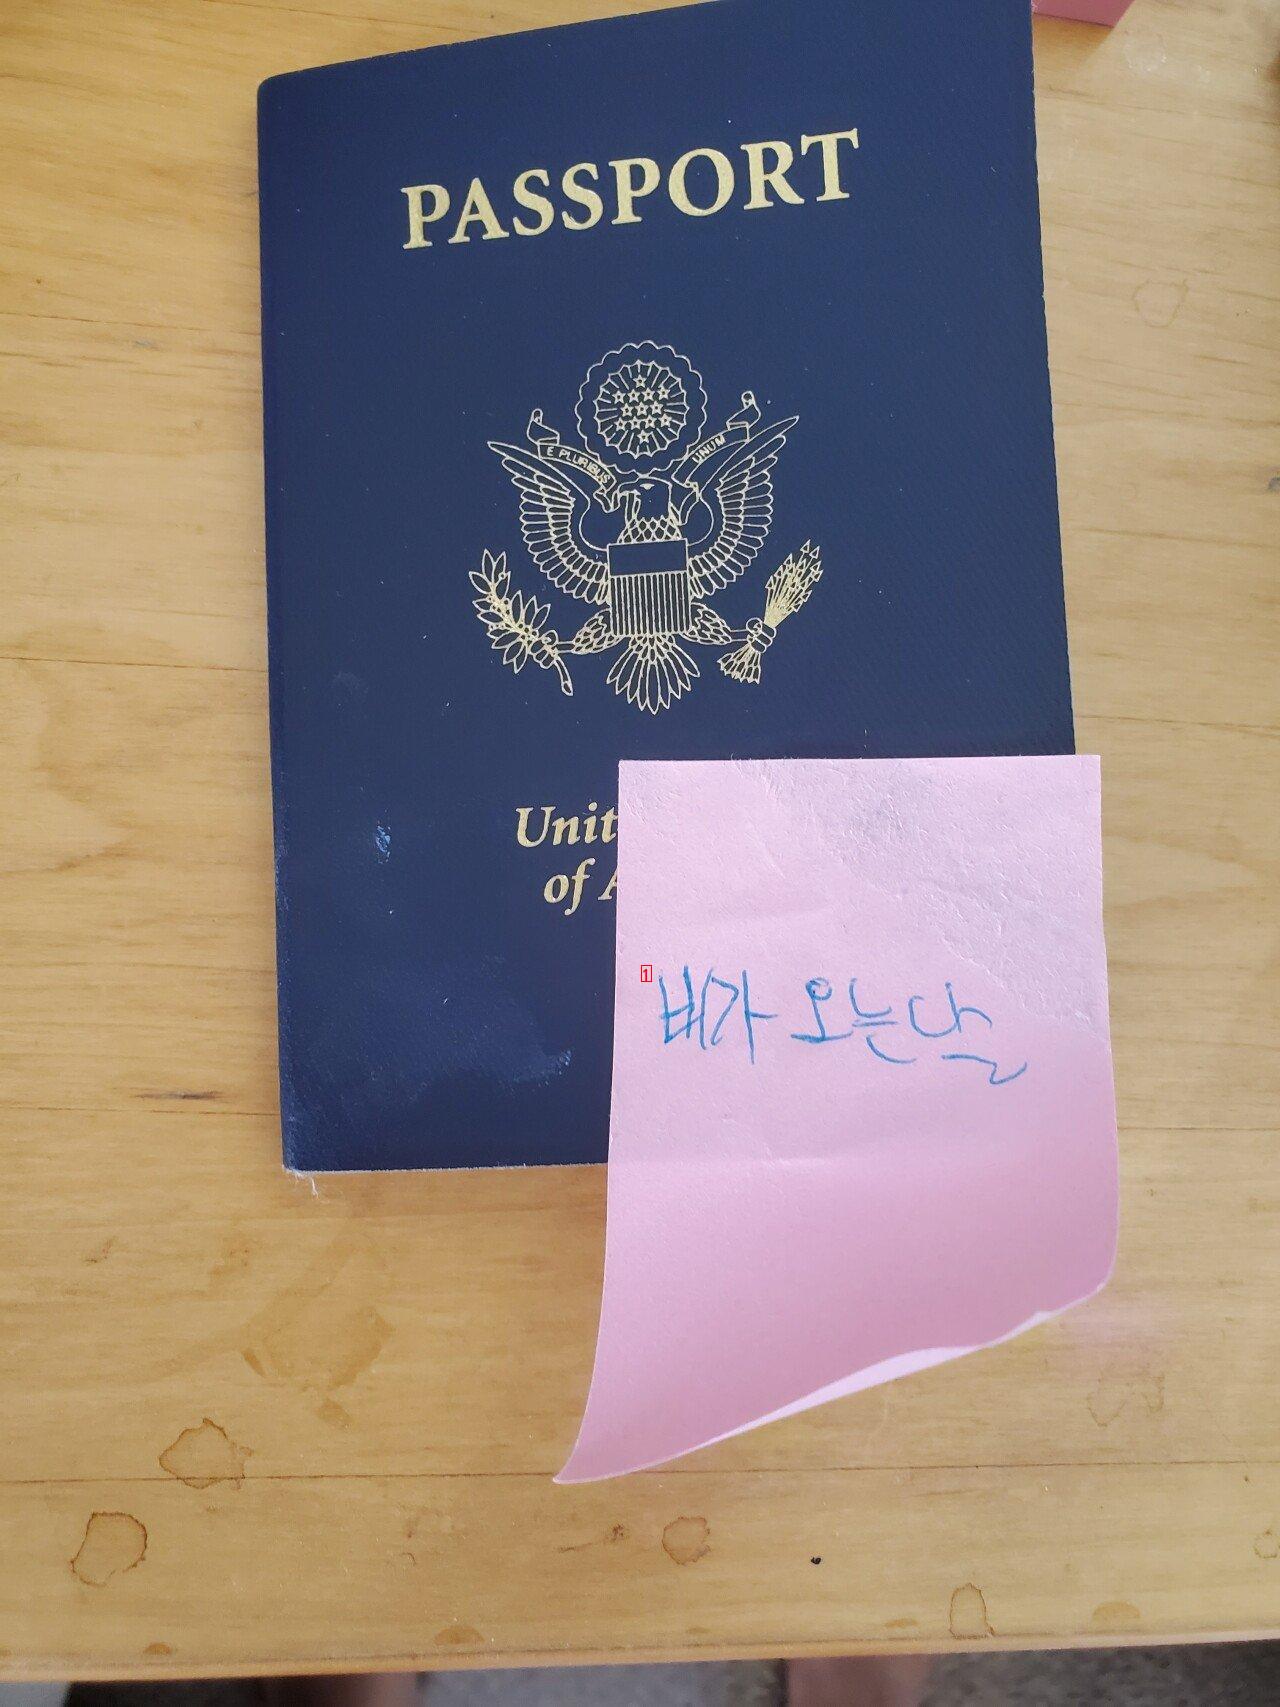 화교 아닌거 인증용 미국 여권